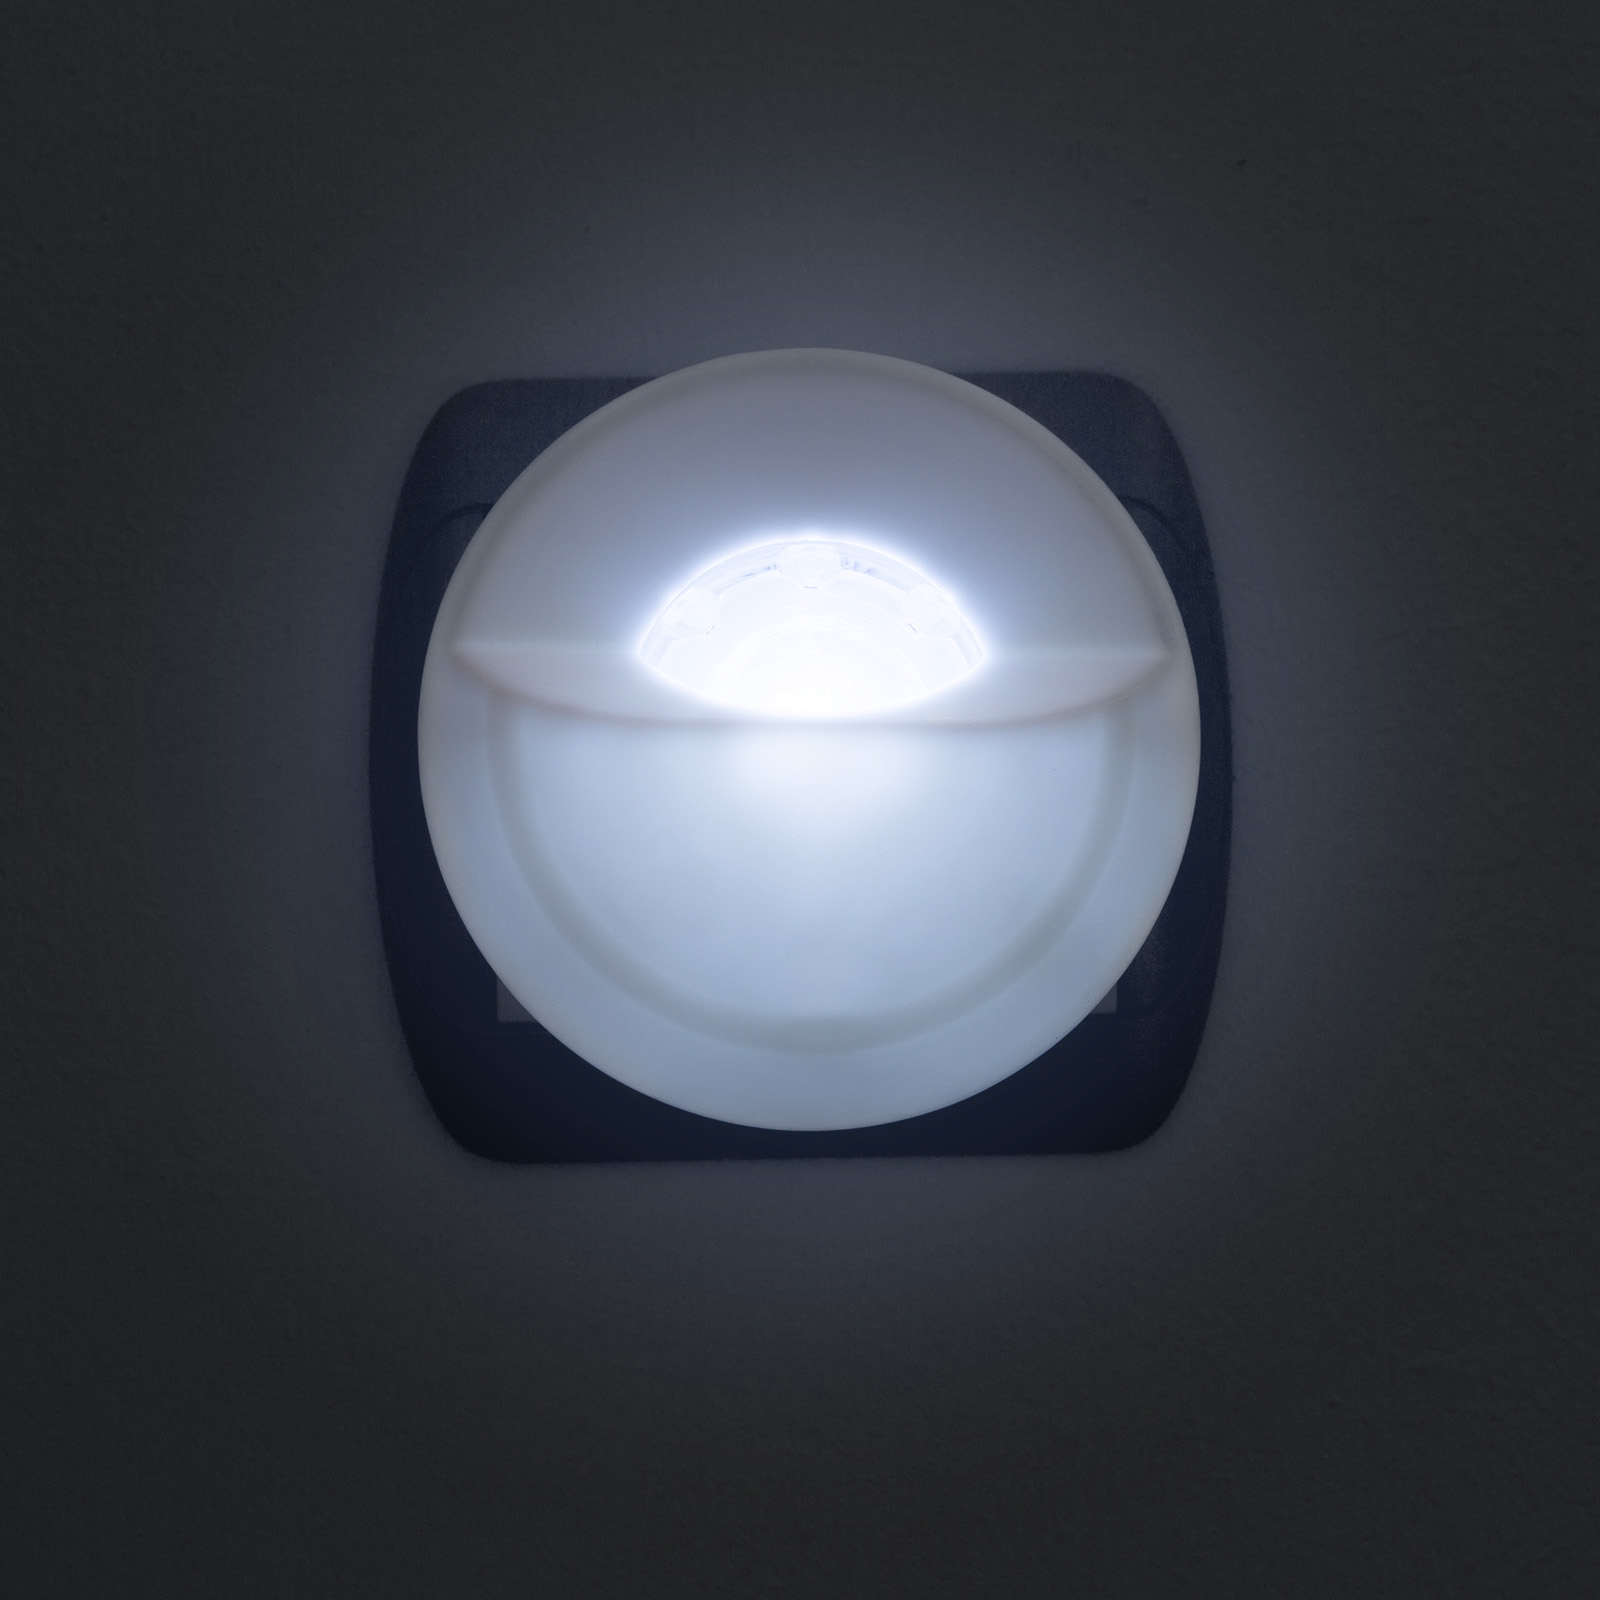 Phenom LED Night Light with Dusk Sensor thumb